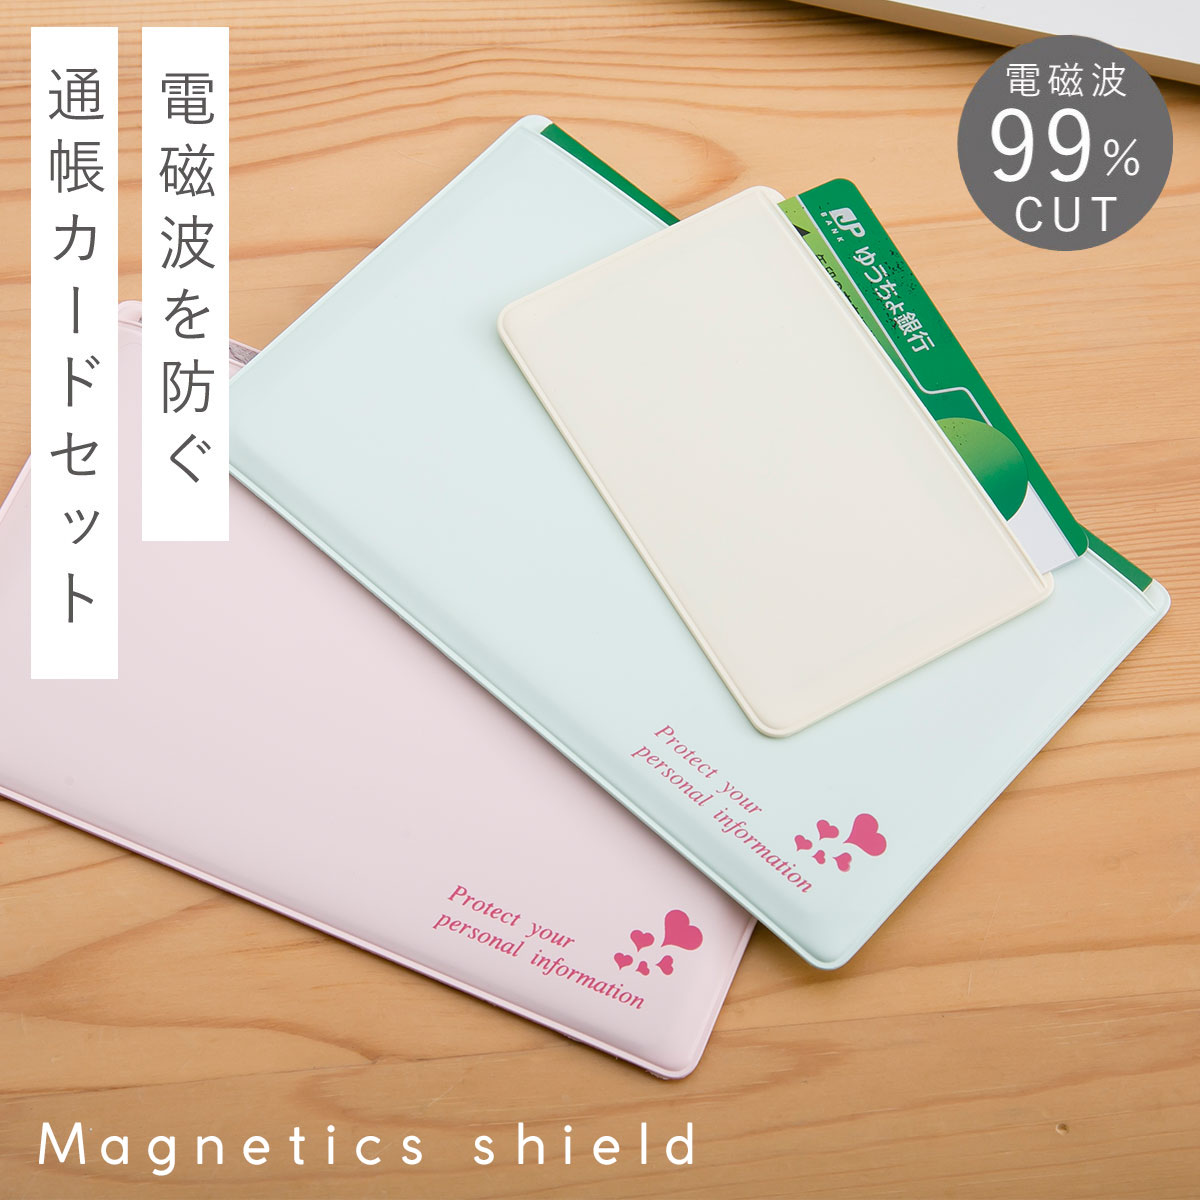 通帳ケース 磁気 防止 磁気シールド スキミング防止 日本製 かわいい スキミング防止 カードケース...